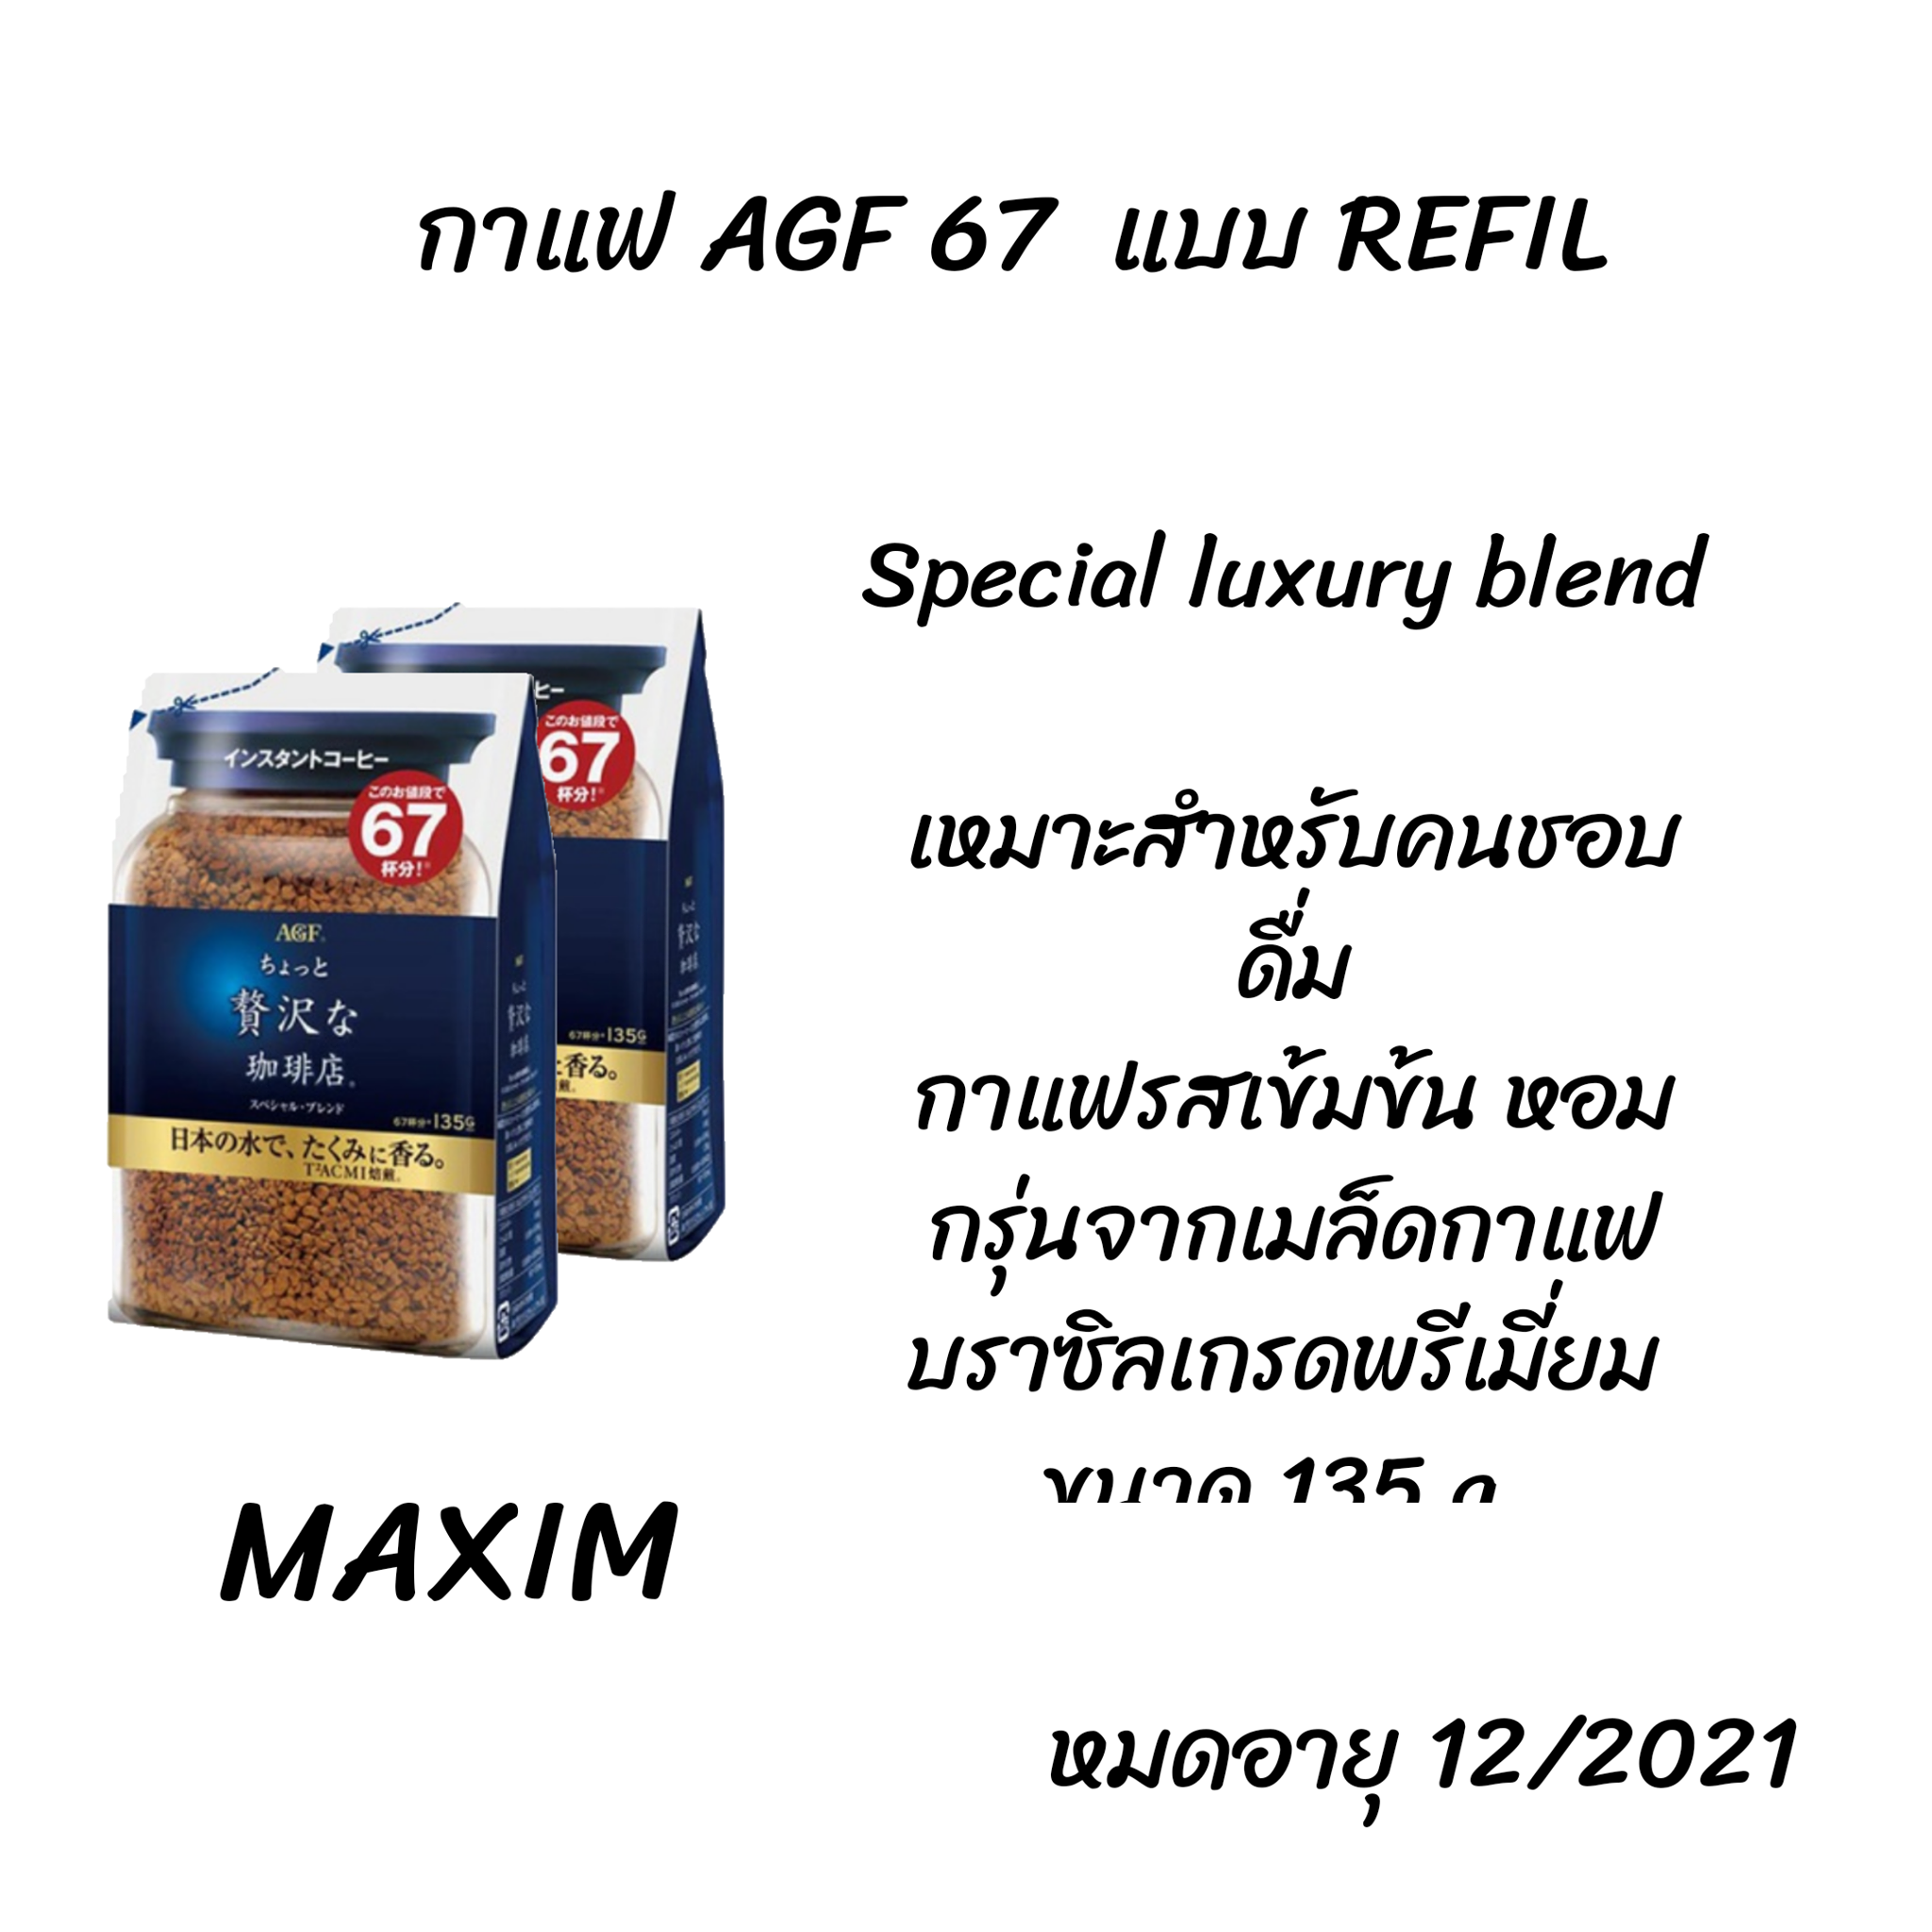 Maxim Luxury Blend Coffee  กาแฟดำแท้ กาแฟแม็กซิม กาแฟพร้อมชง เครื่องดื่มสำเร็จรูป กาแฟคั่วบด ถุงสีน้ำเงิน กาแฟญี่ปุ่น ขนาด 80 g แบบขวด